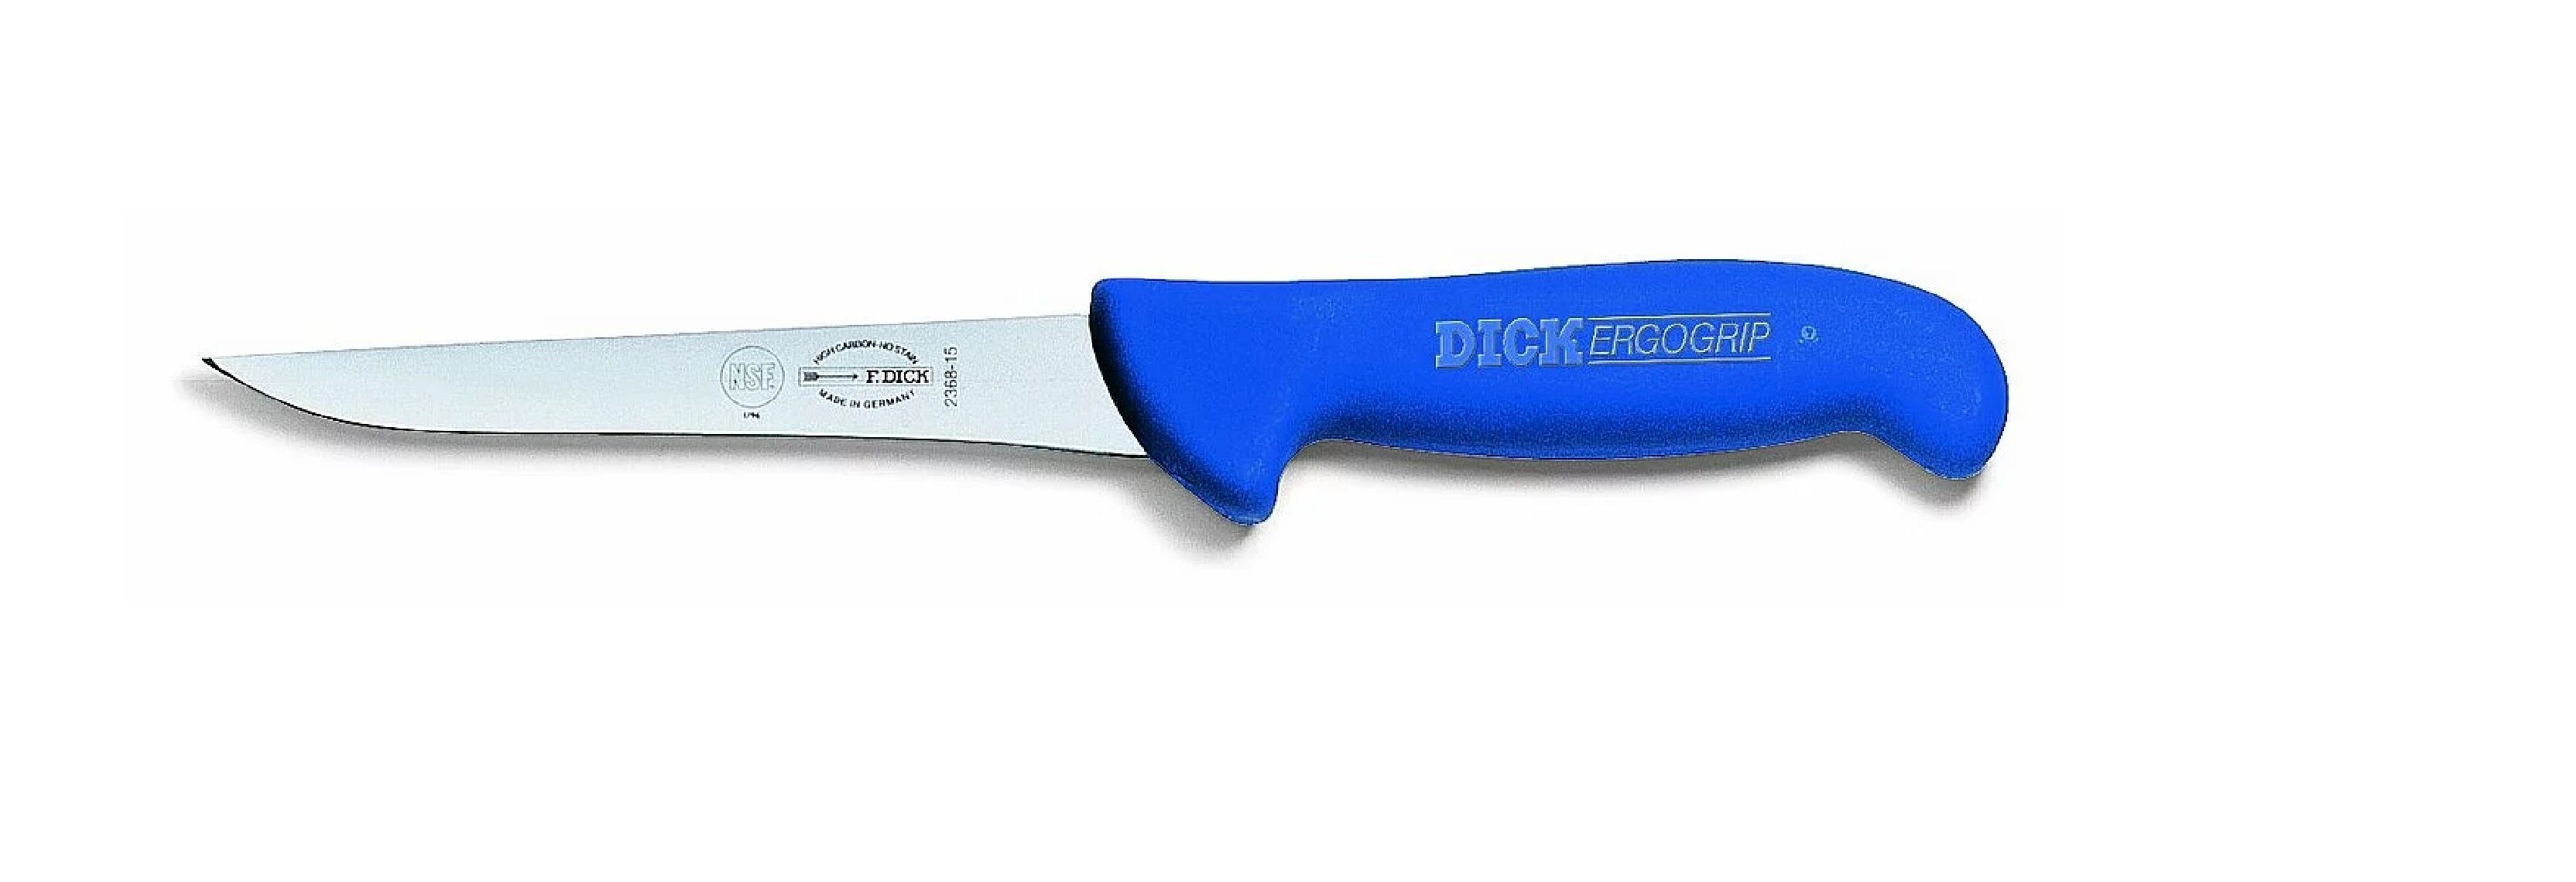 Dick Ausbeinmesser Dick Ausbeinmesser 10 cm Ergogrip 8236810